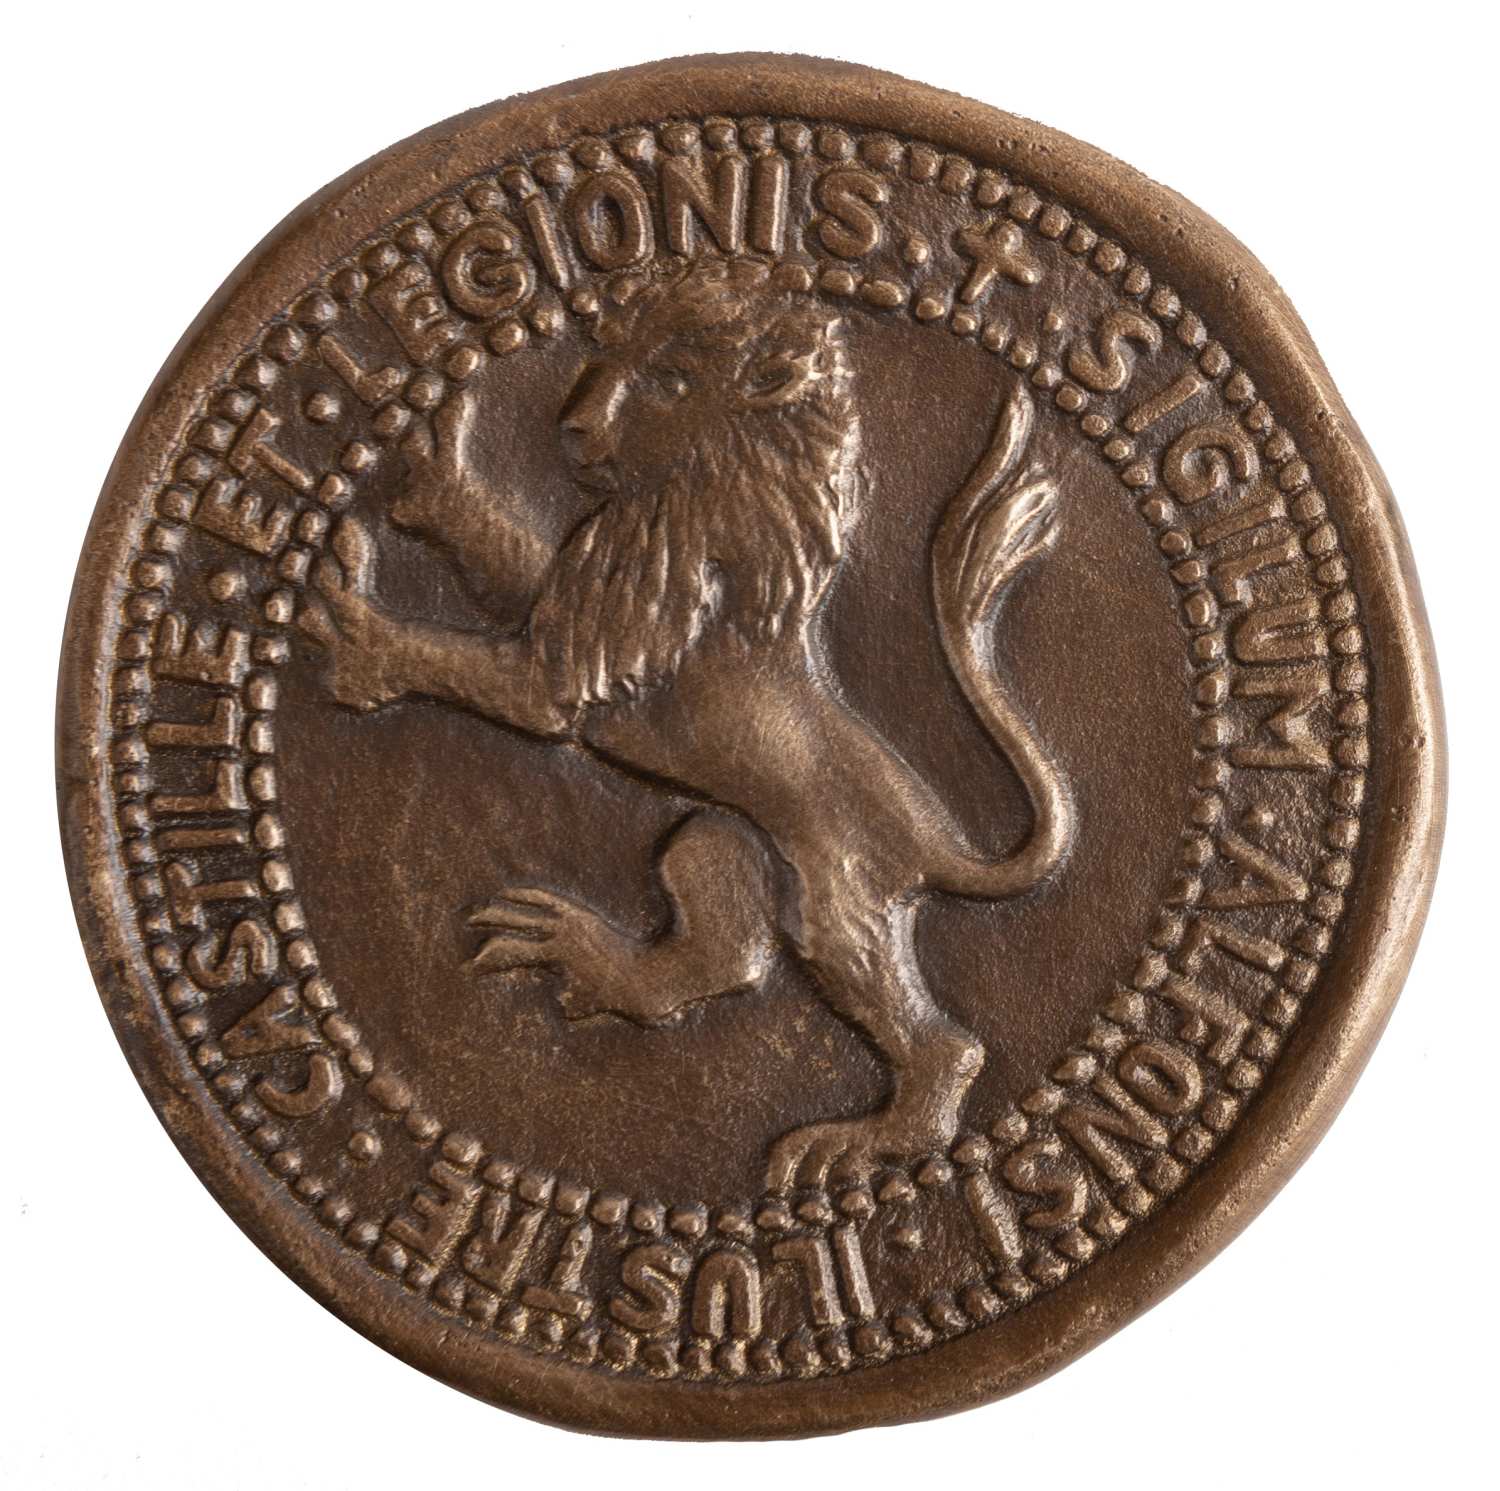 5 Medalla Alfonso X